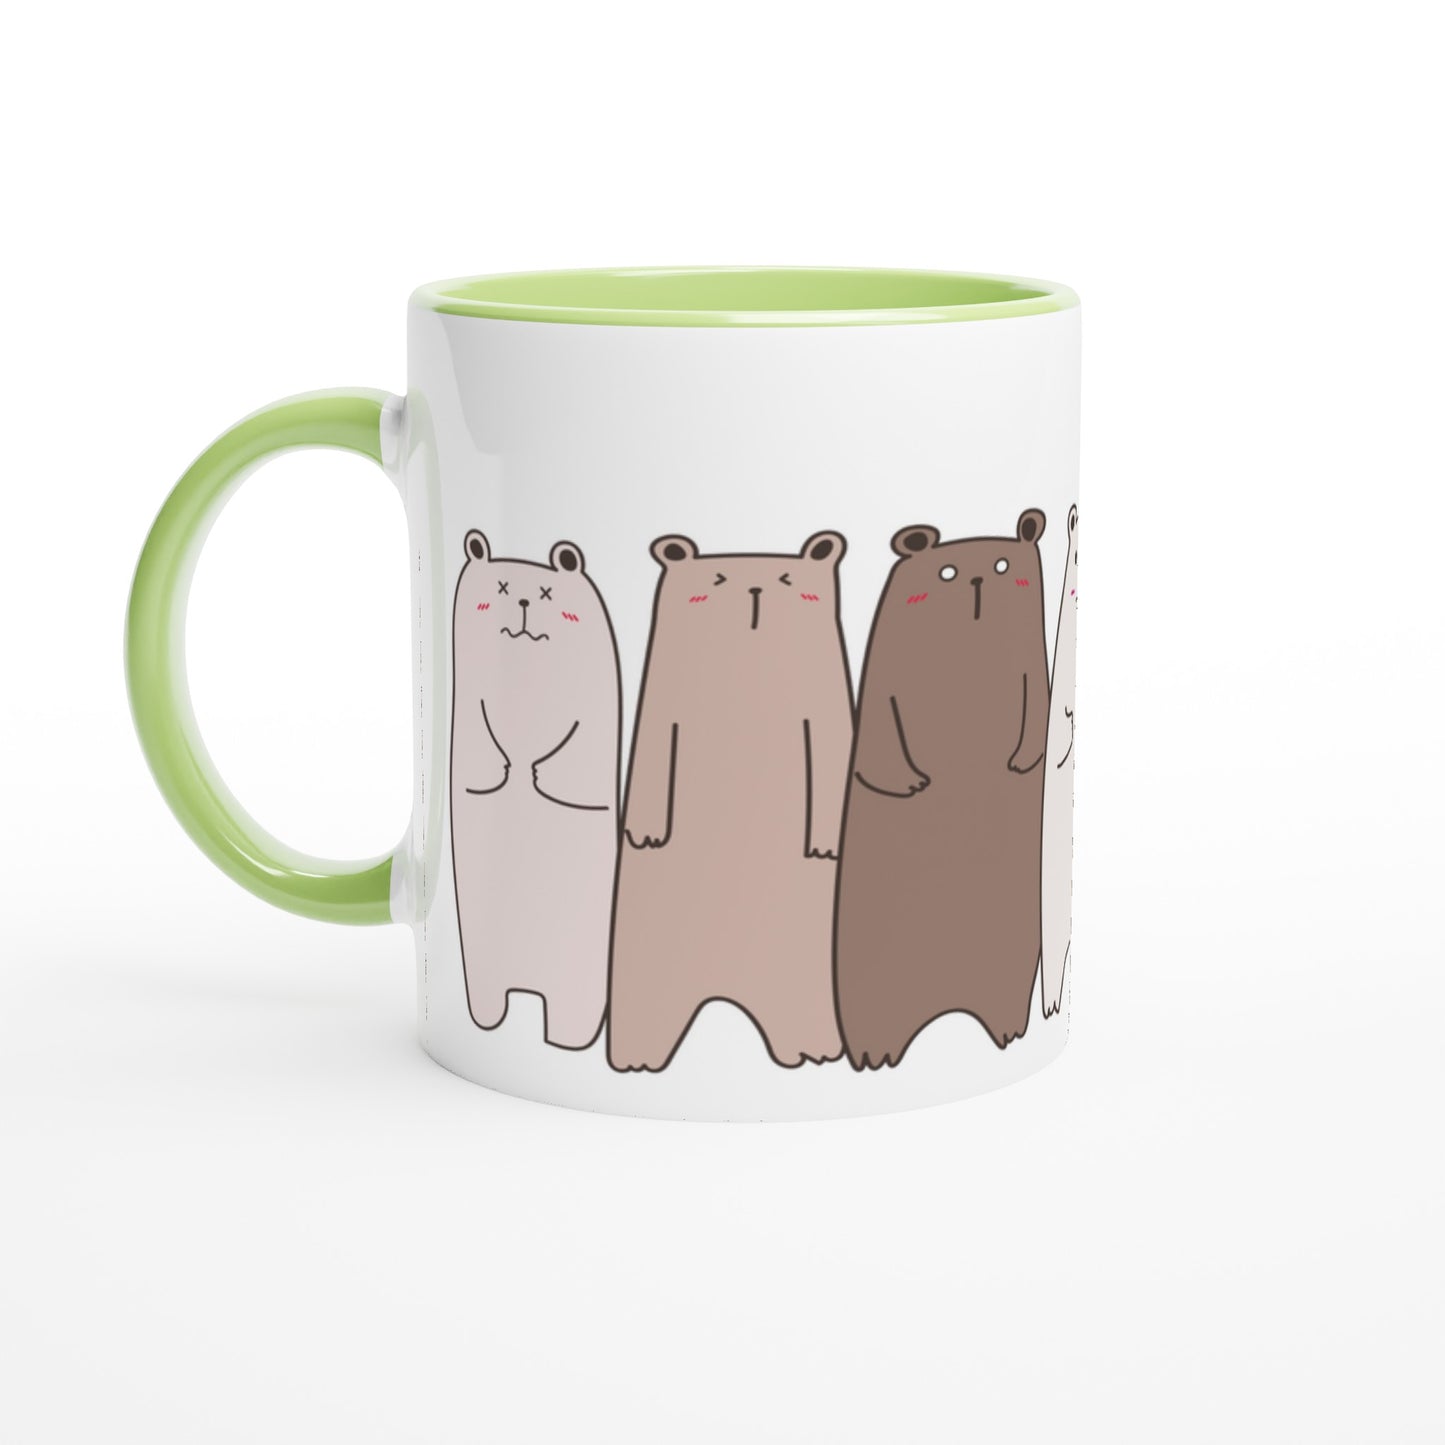 Bears In A Row - White 11oz Ceramic Mug with Colour Inside Ceramic Green Colour 11oz Mug animal